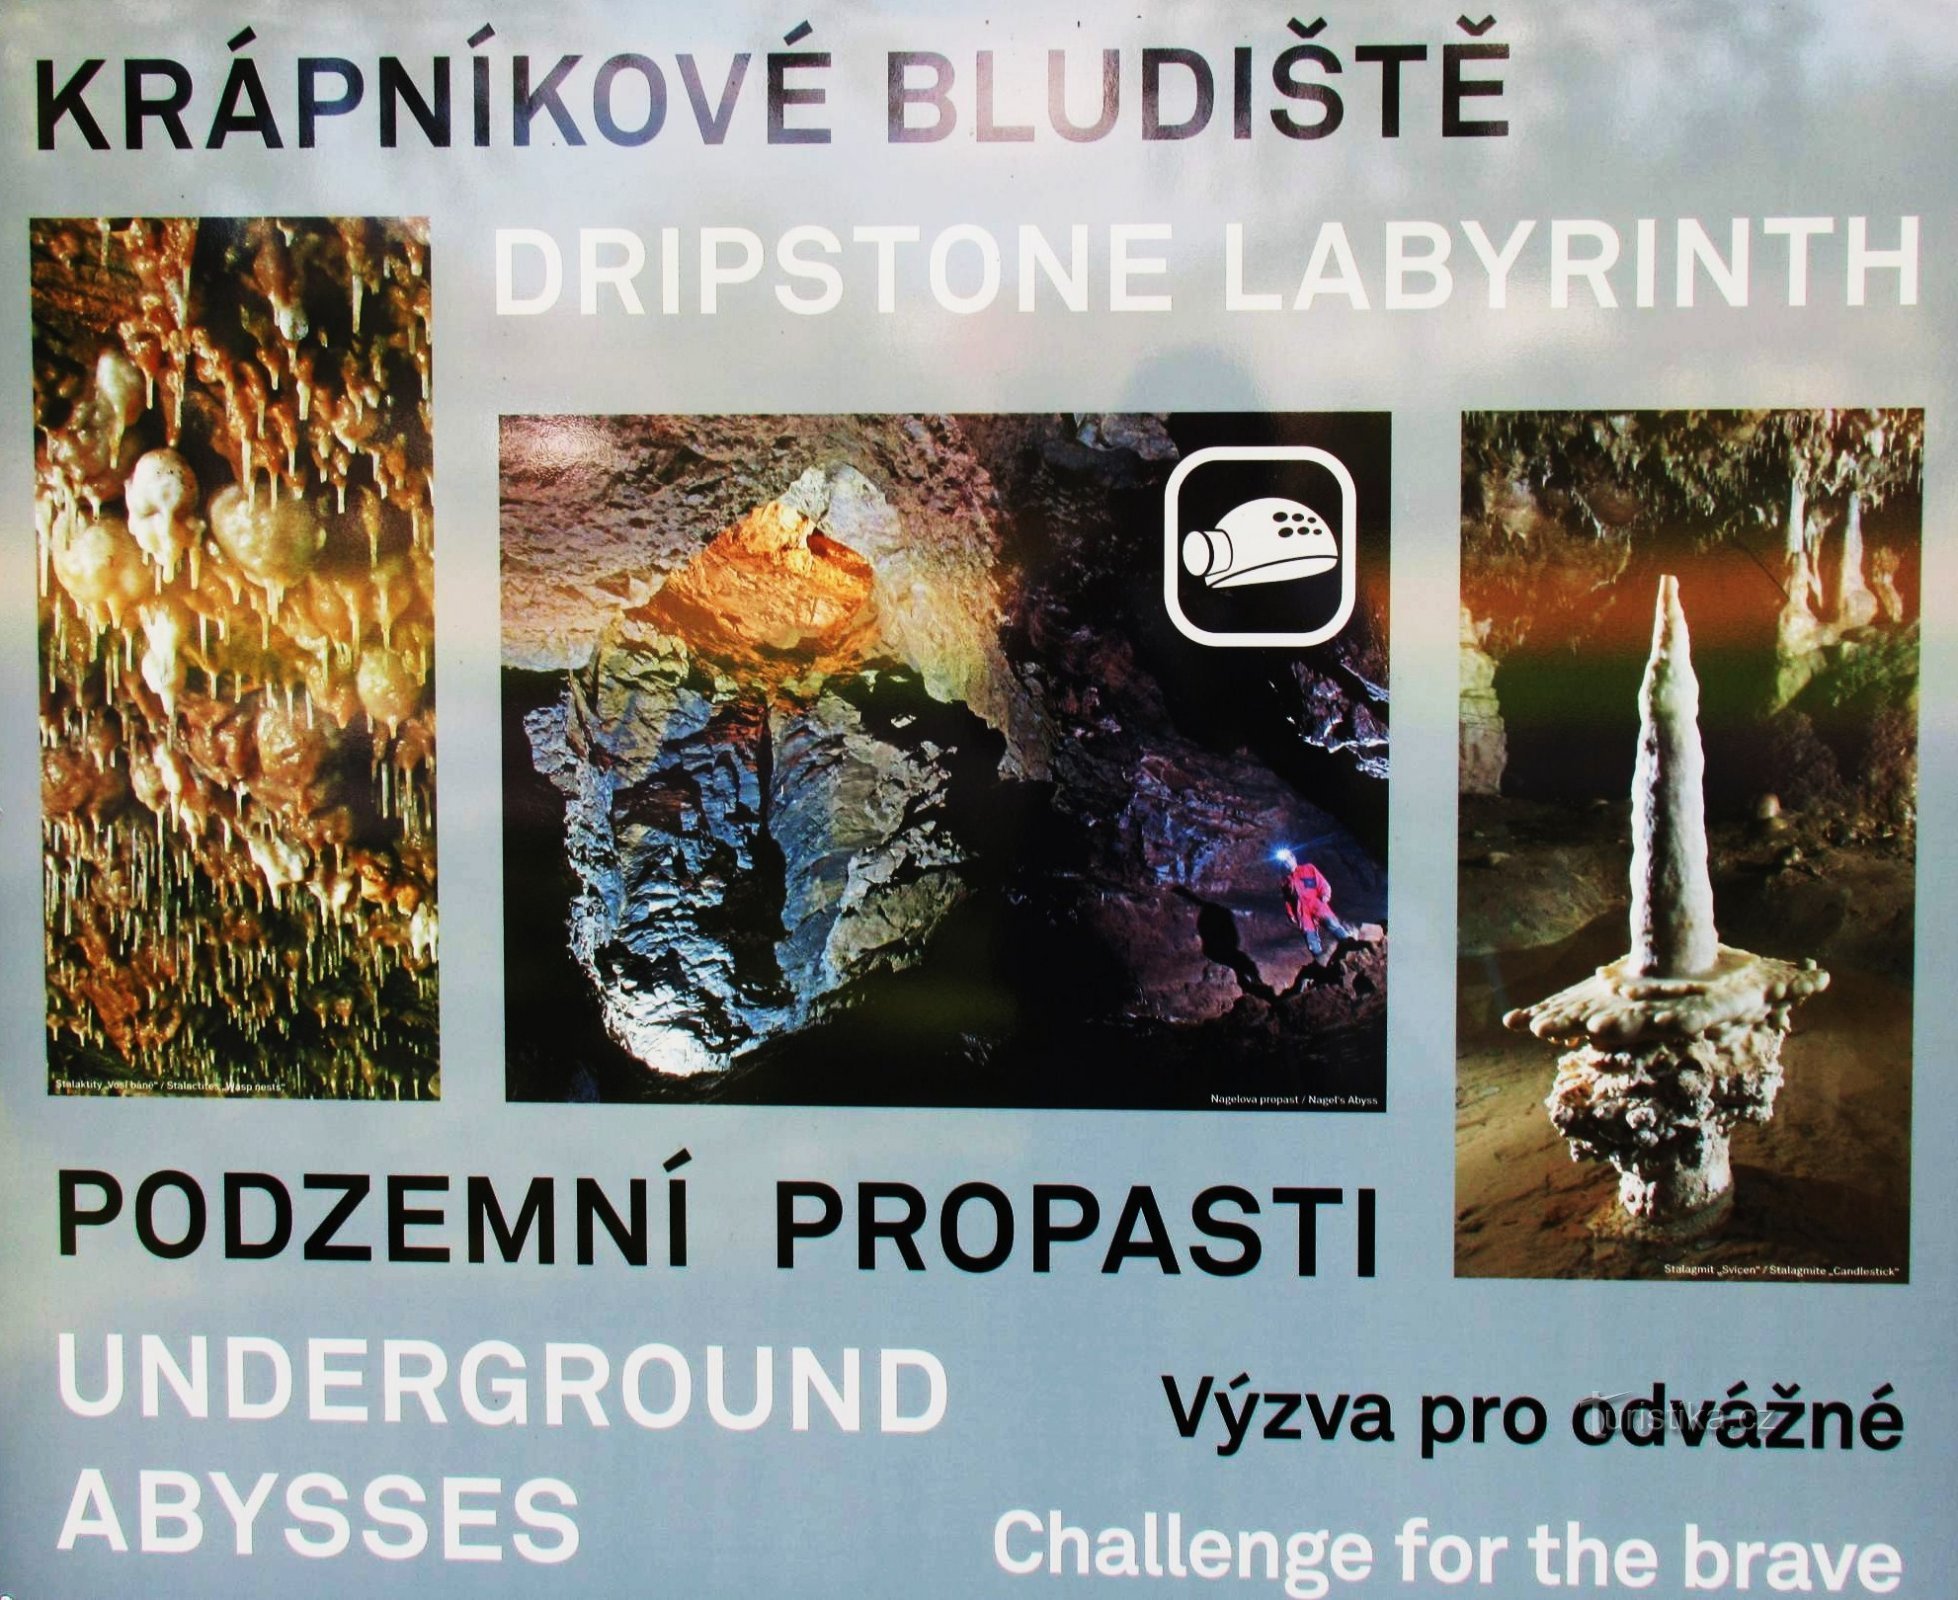 For experiences in Sloupsko - Šošůvské caves